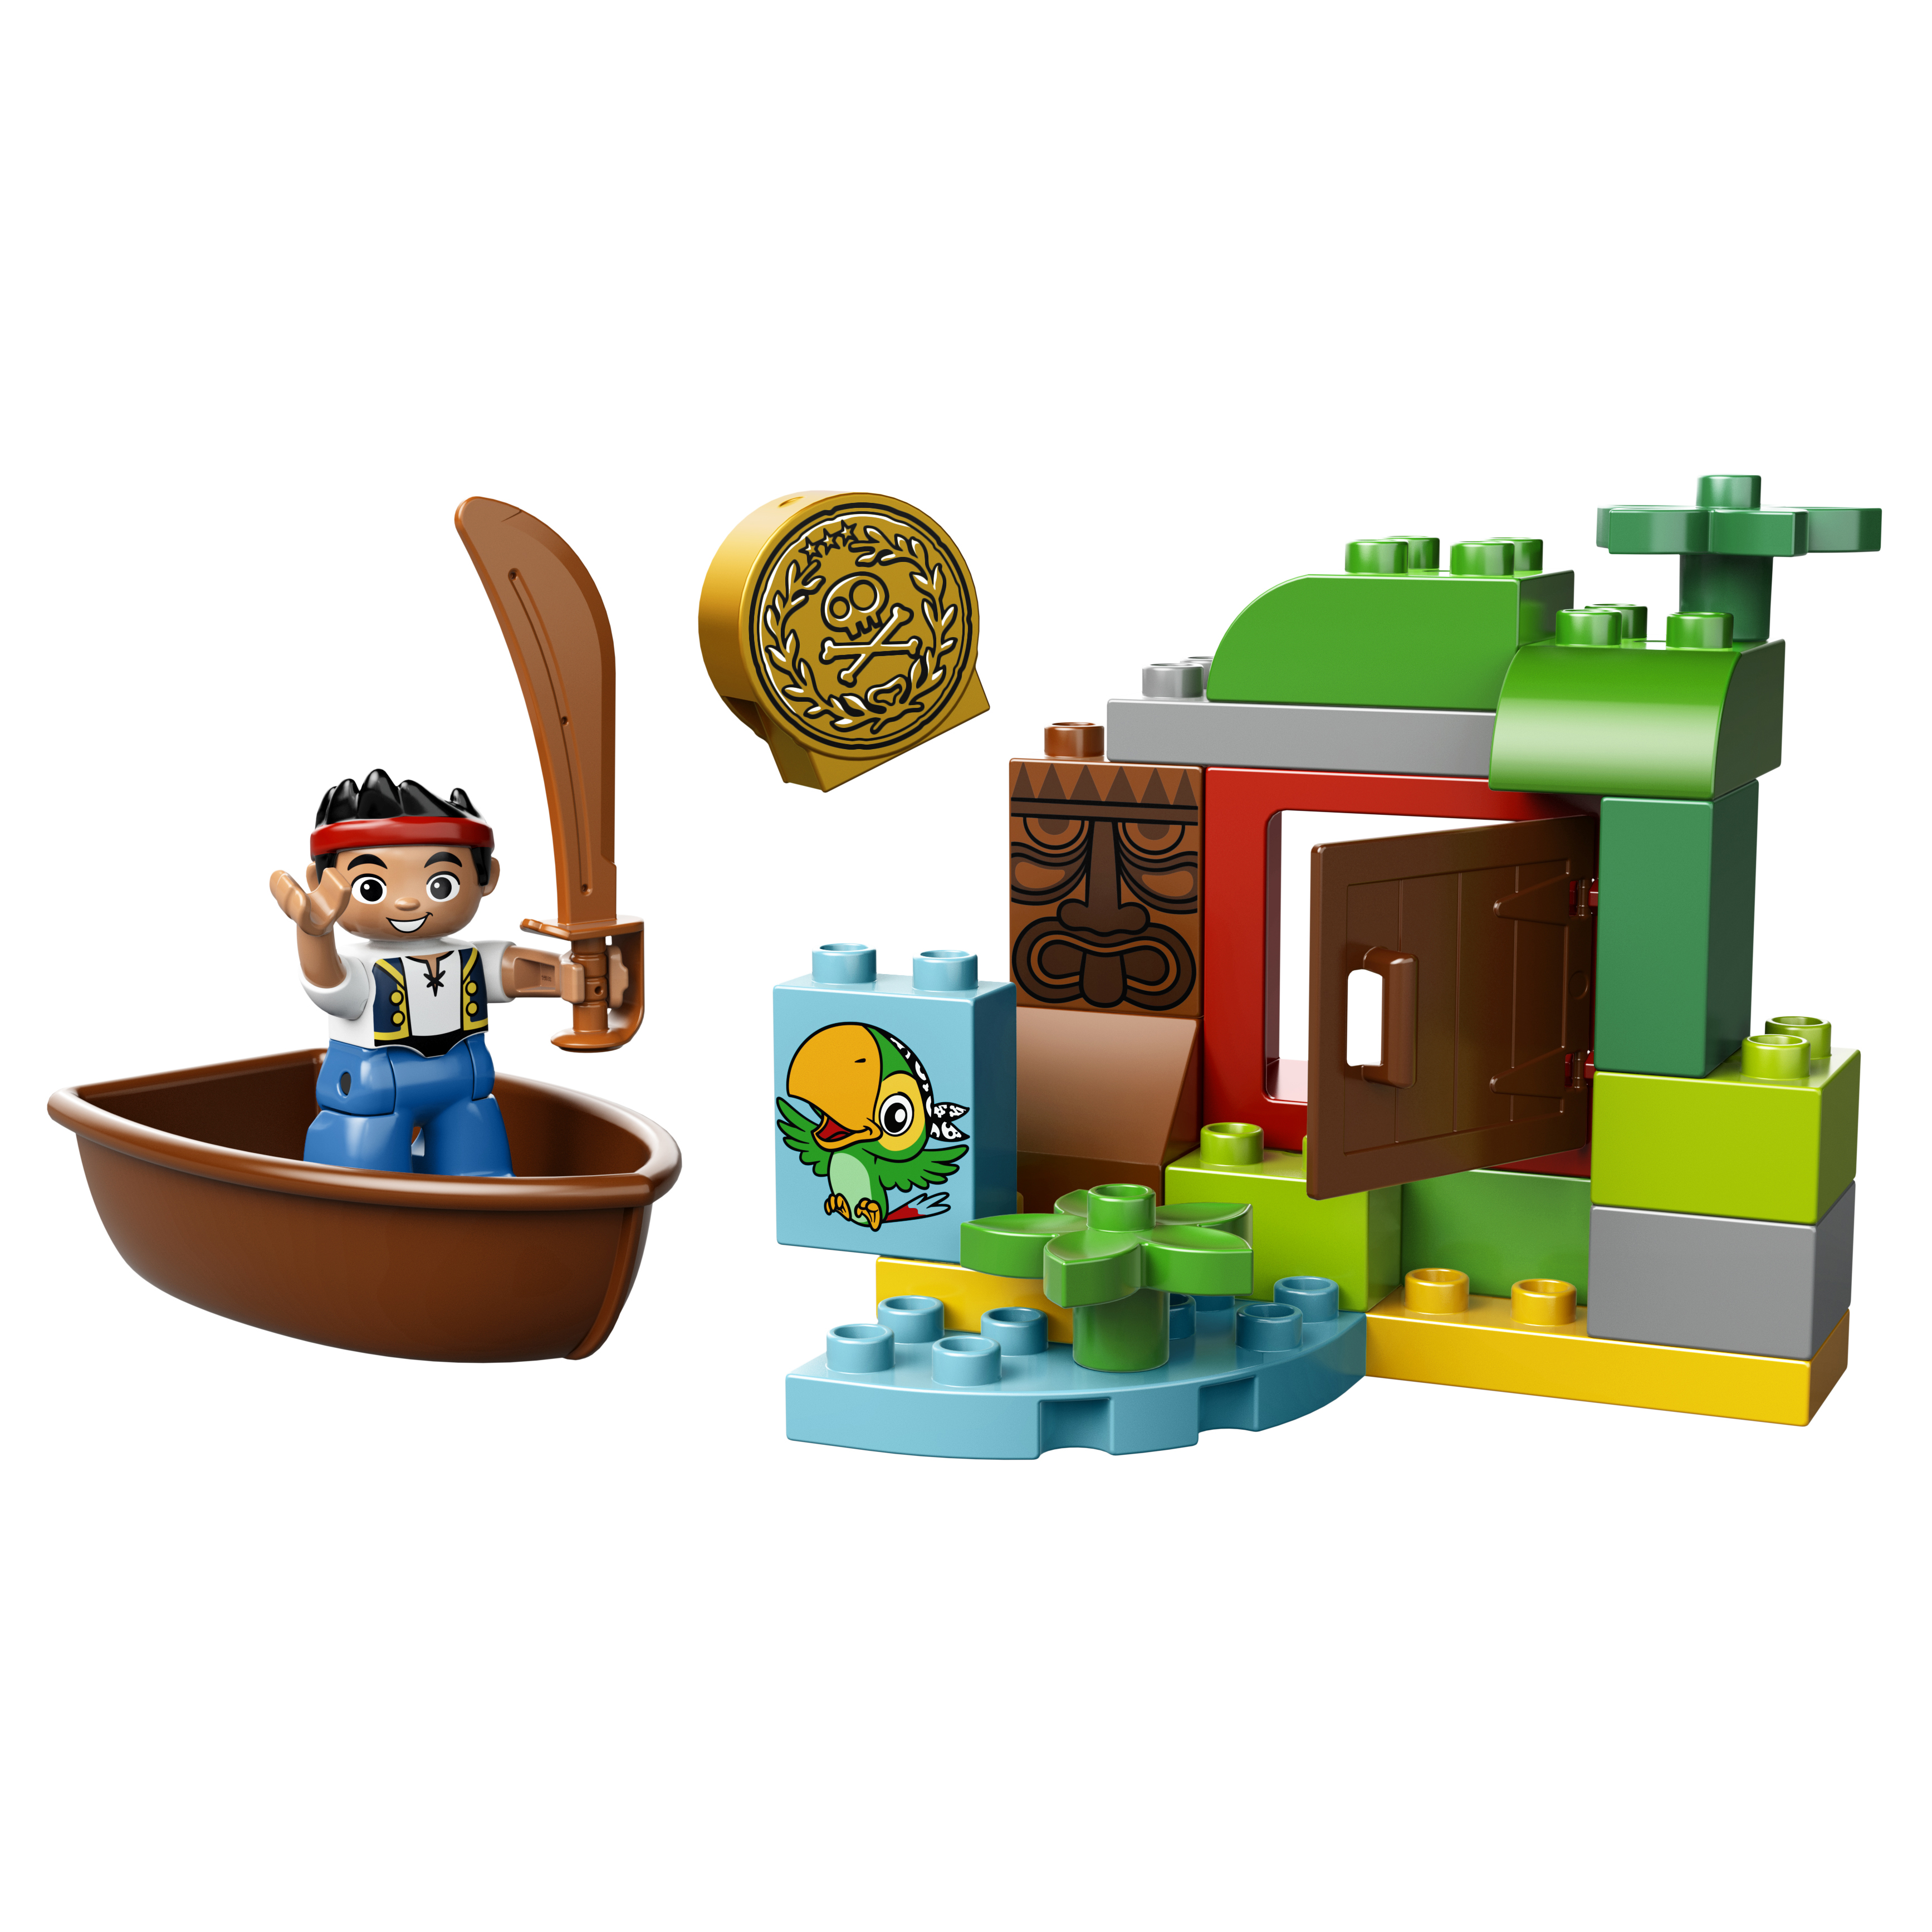 Купить Конструктор lego duplo jake охота за сокровищами (10512), Конструктор LEGO Duplo Jake Охота за сокровищами (10512),